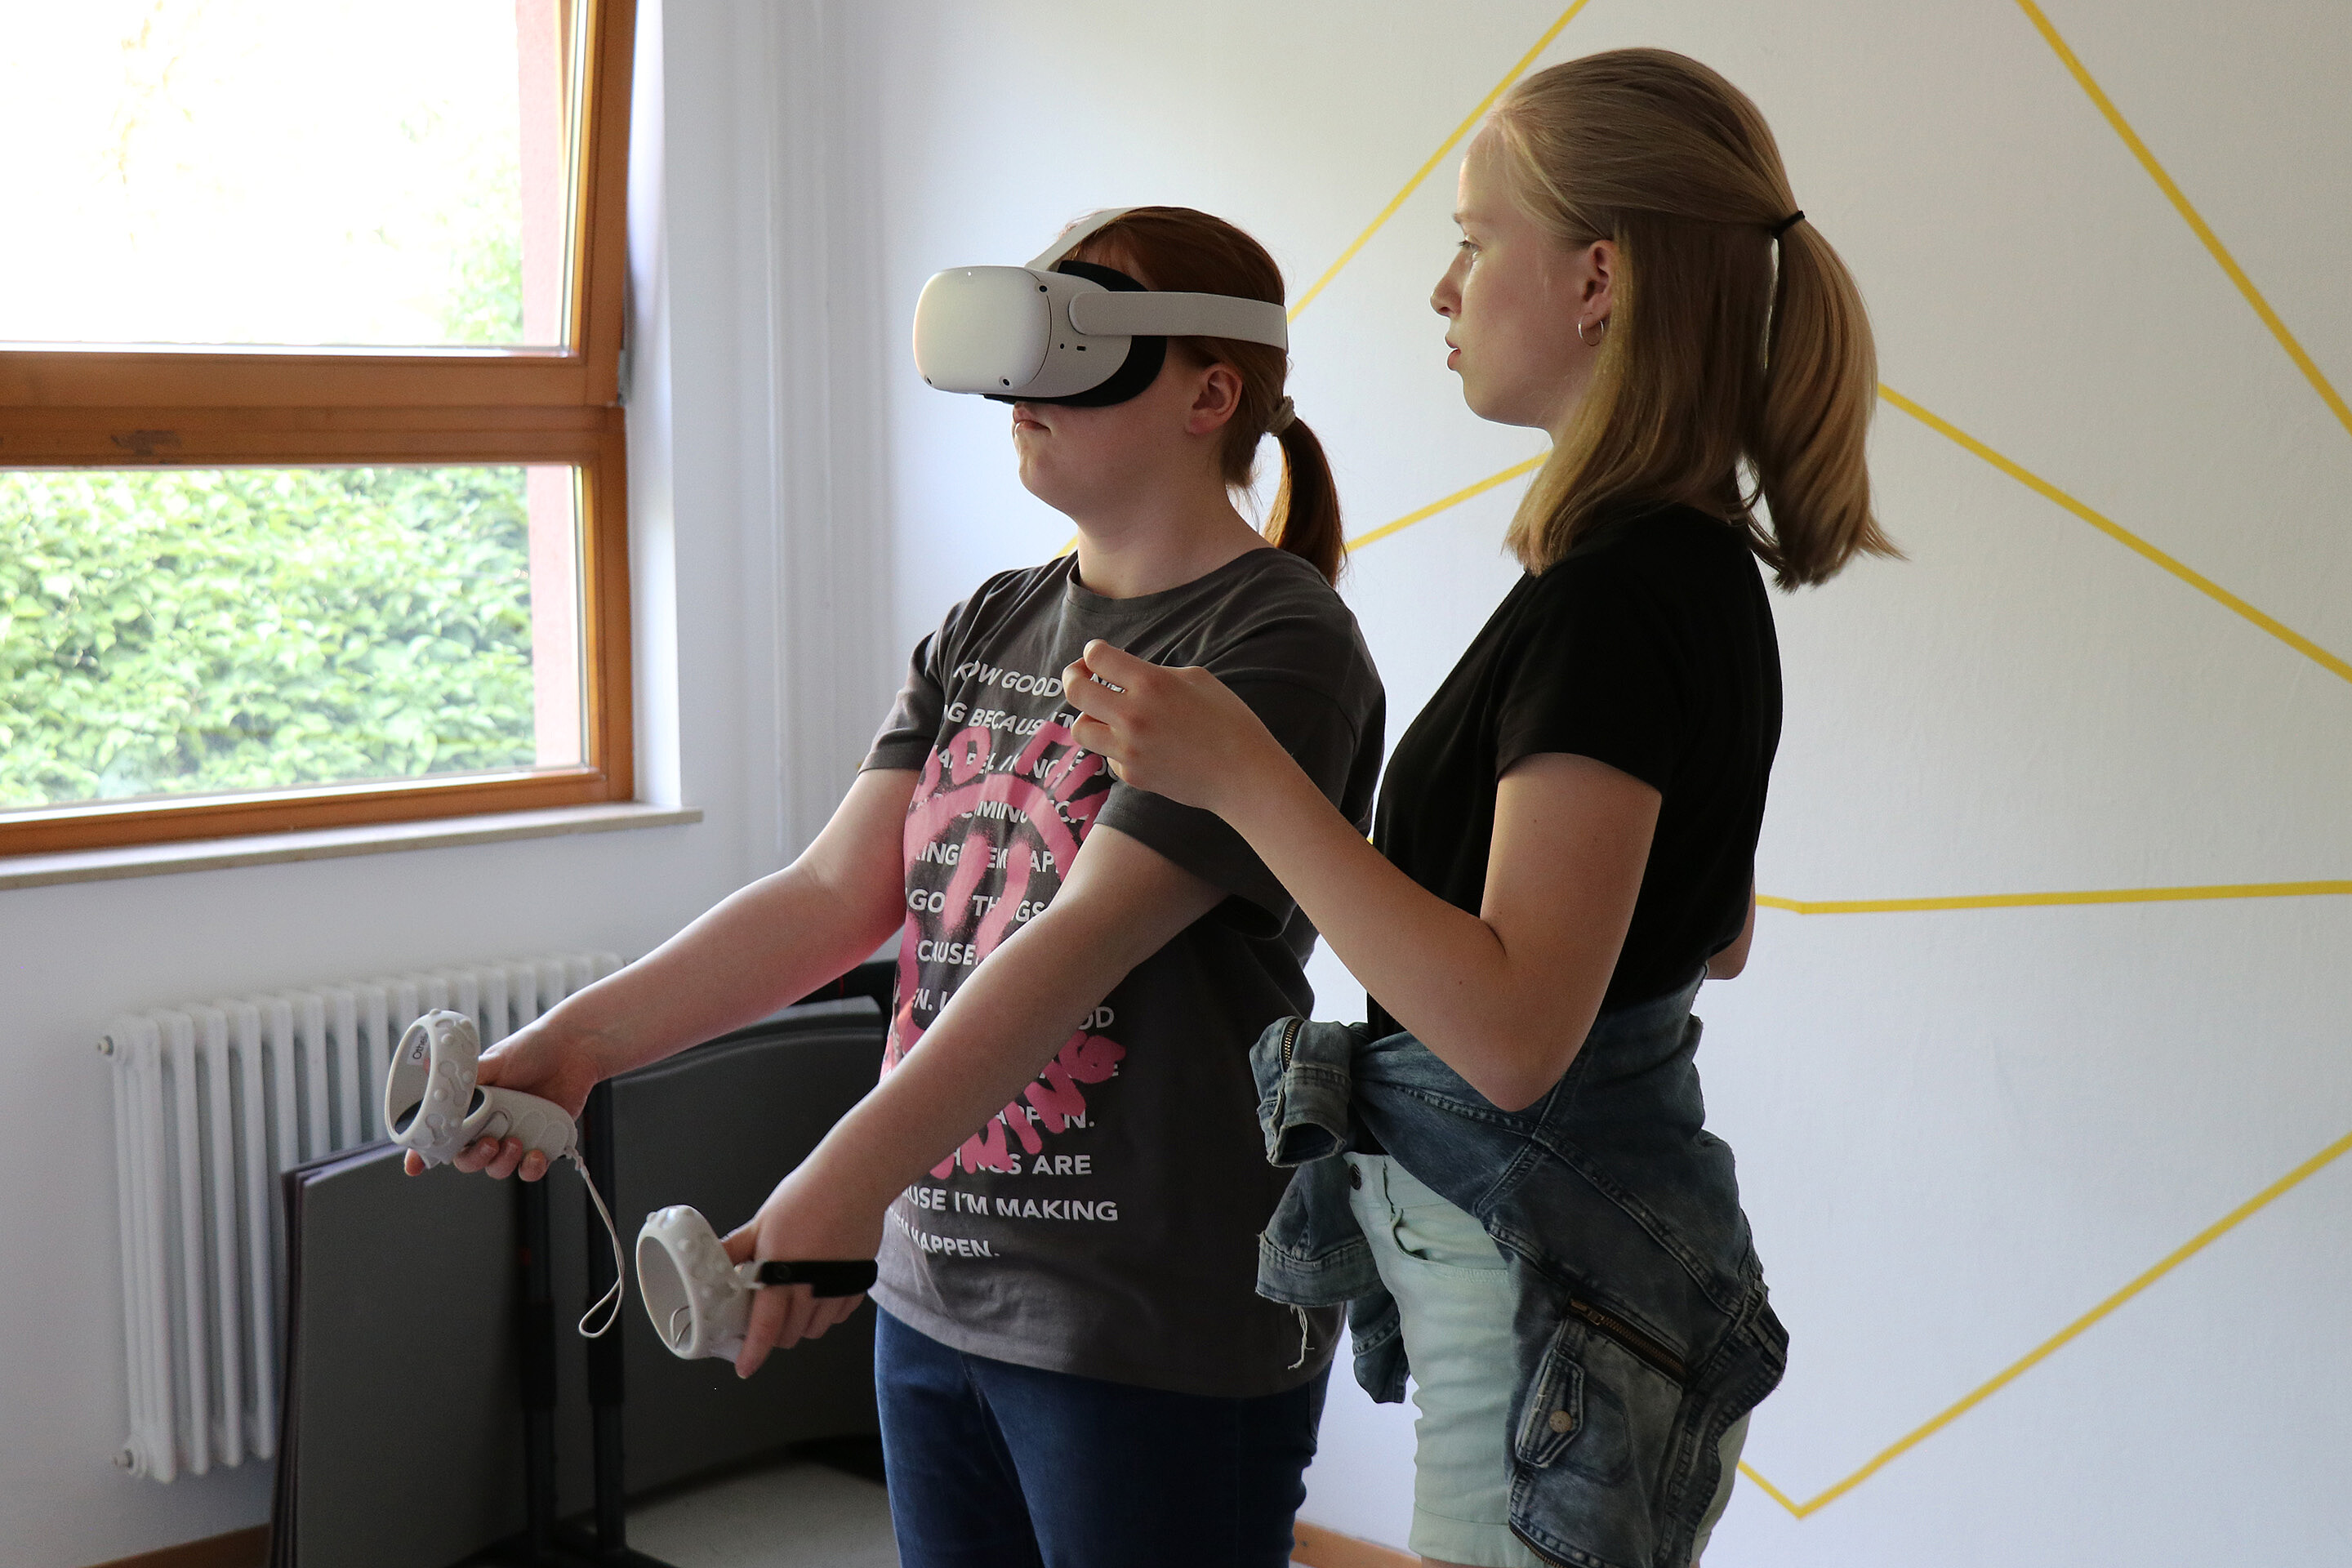 In der "VR Arena" konnten Spiele in der Virtuellen Realität ausprobiert werden.